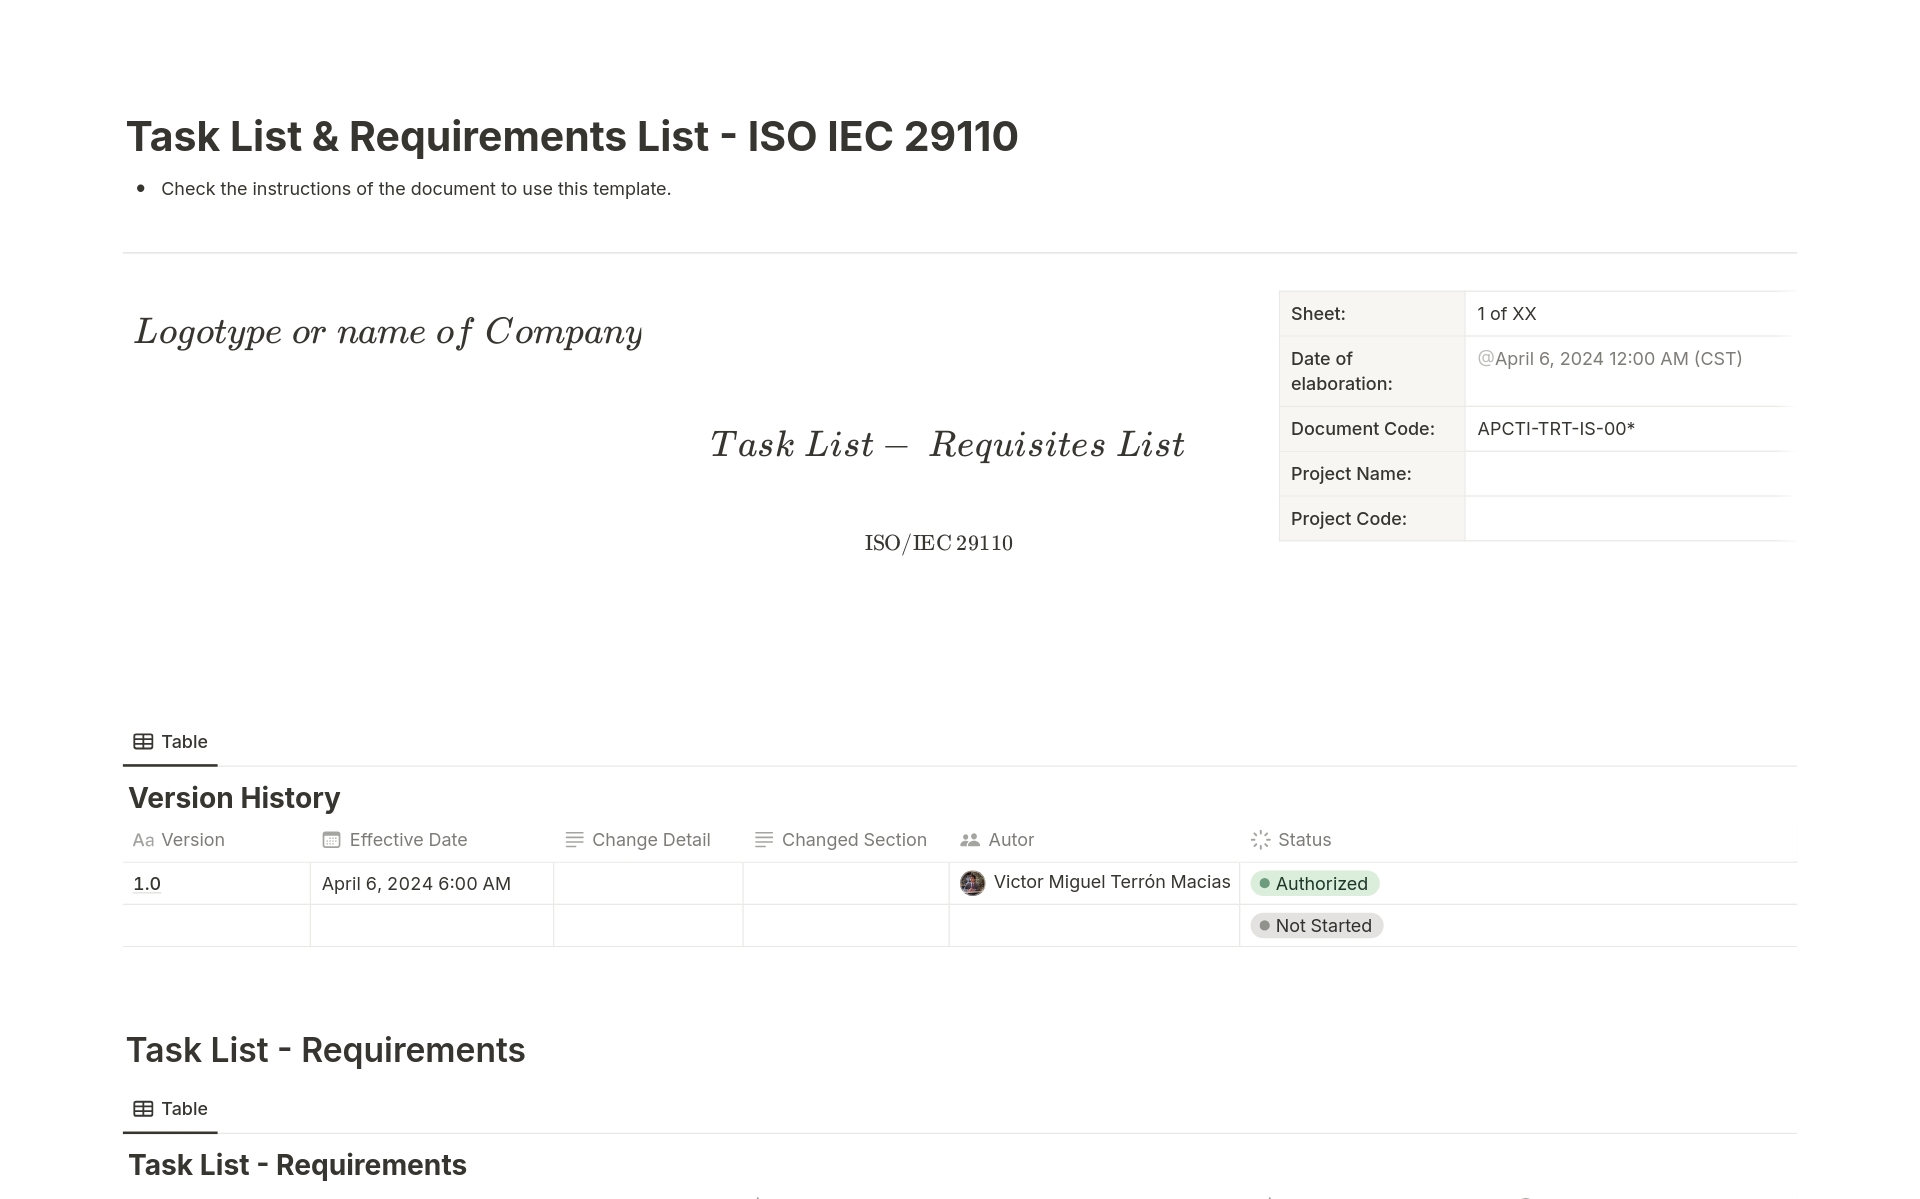 Vista previa de plantilla para Software Task List - Requirements 